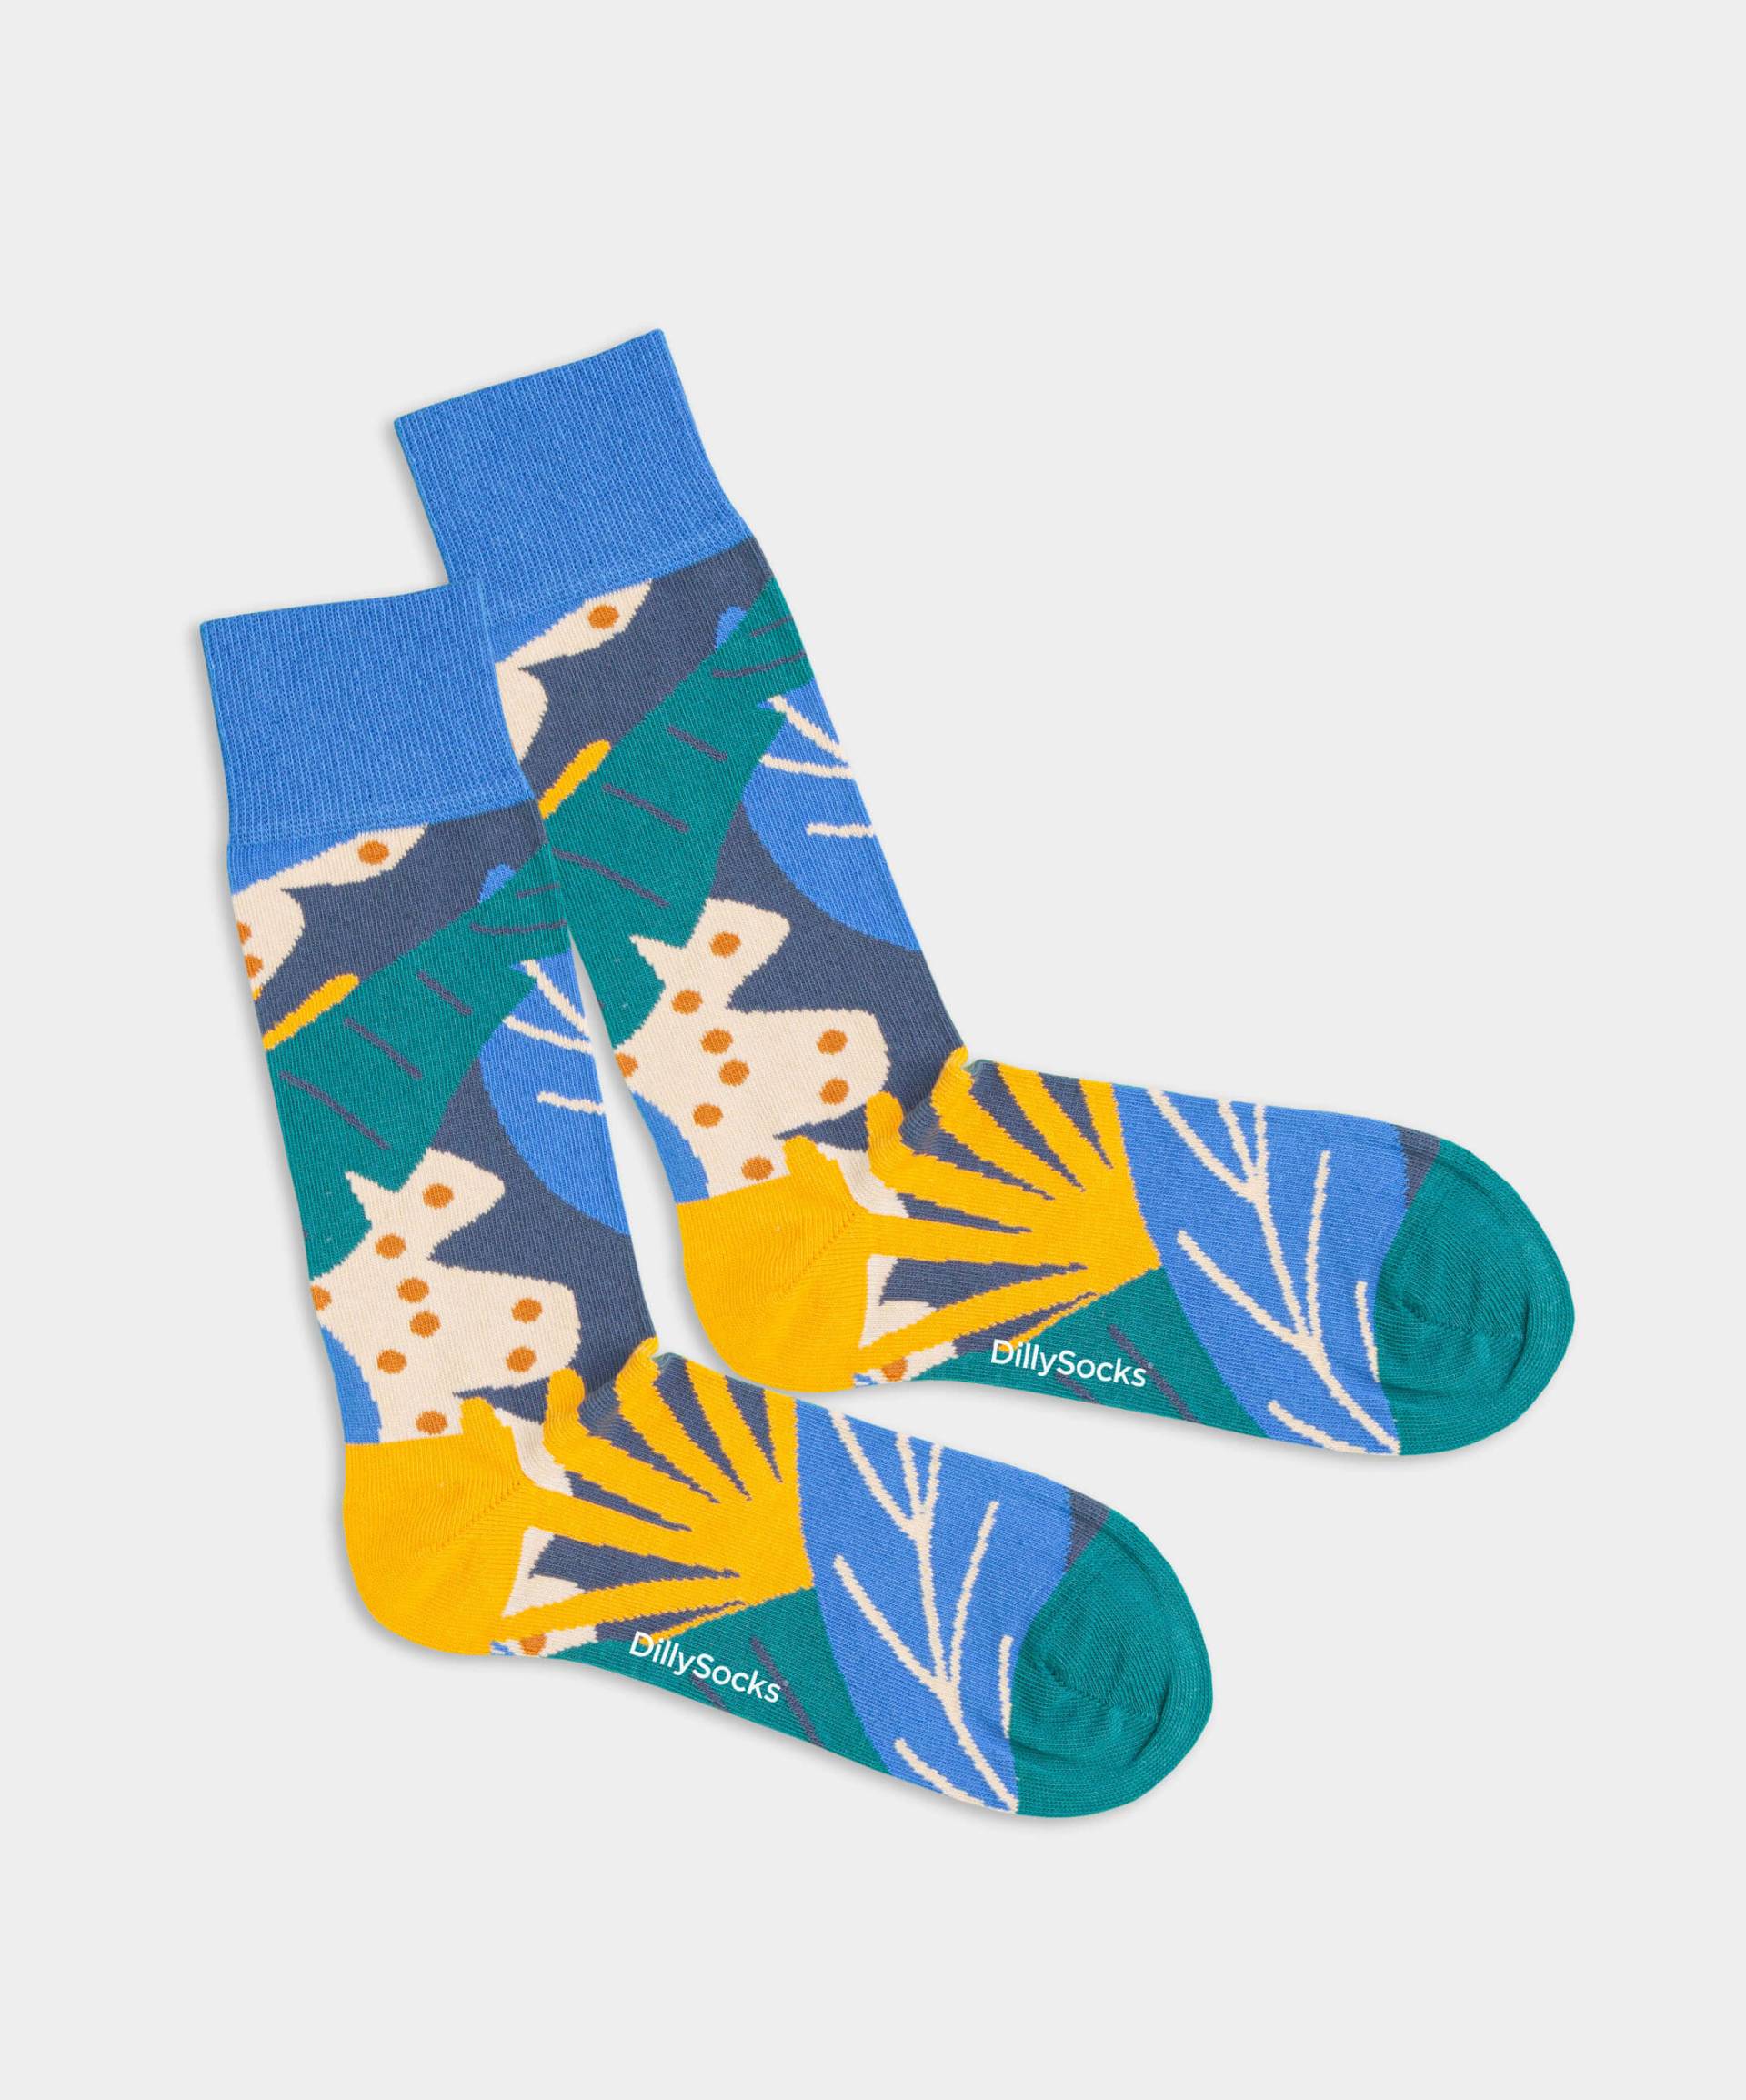 - Socken in Blau mit Blätter Motiv/Muster von DillySocks